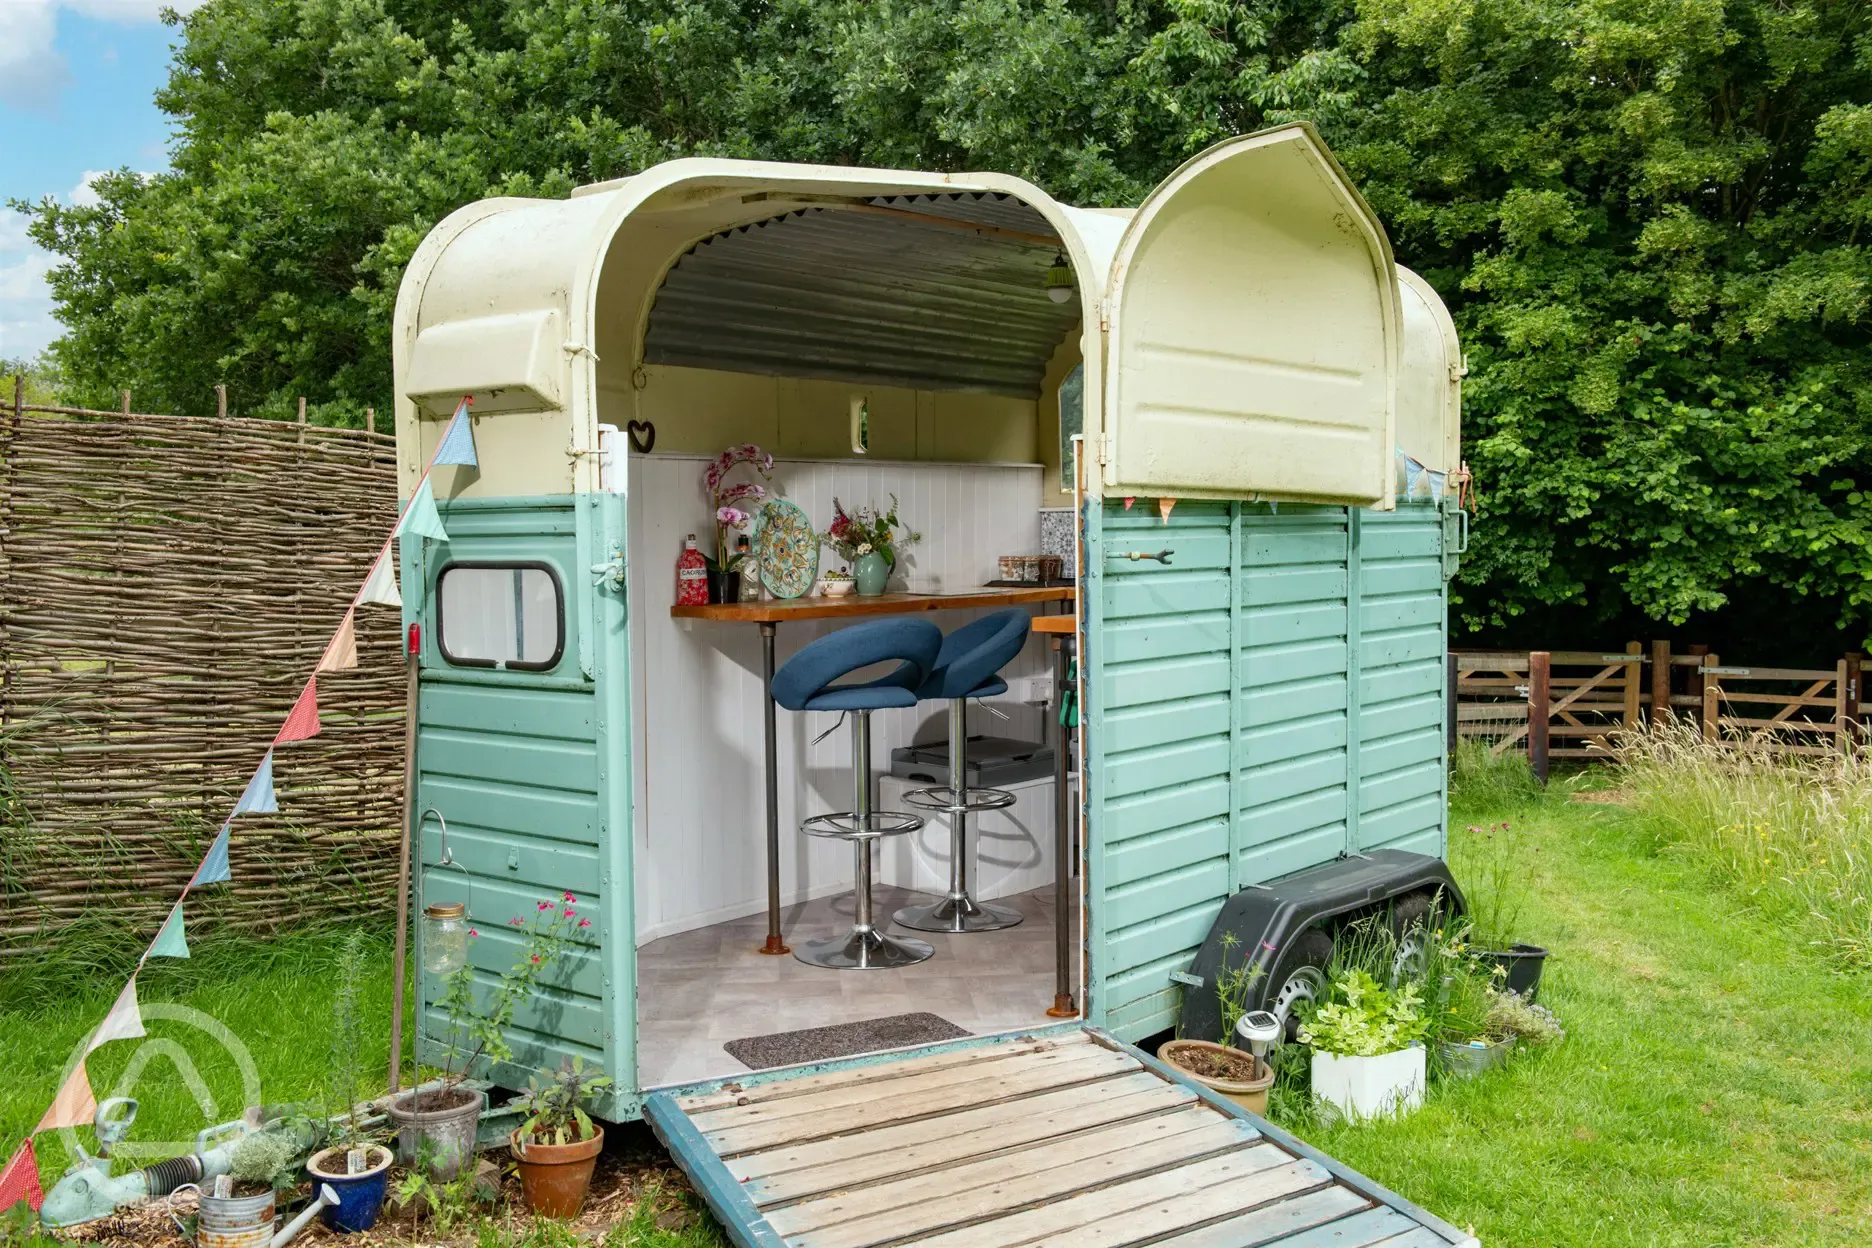 Converted trailer kitchen 